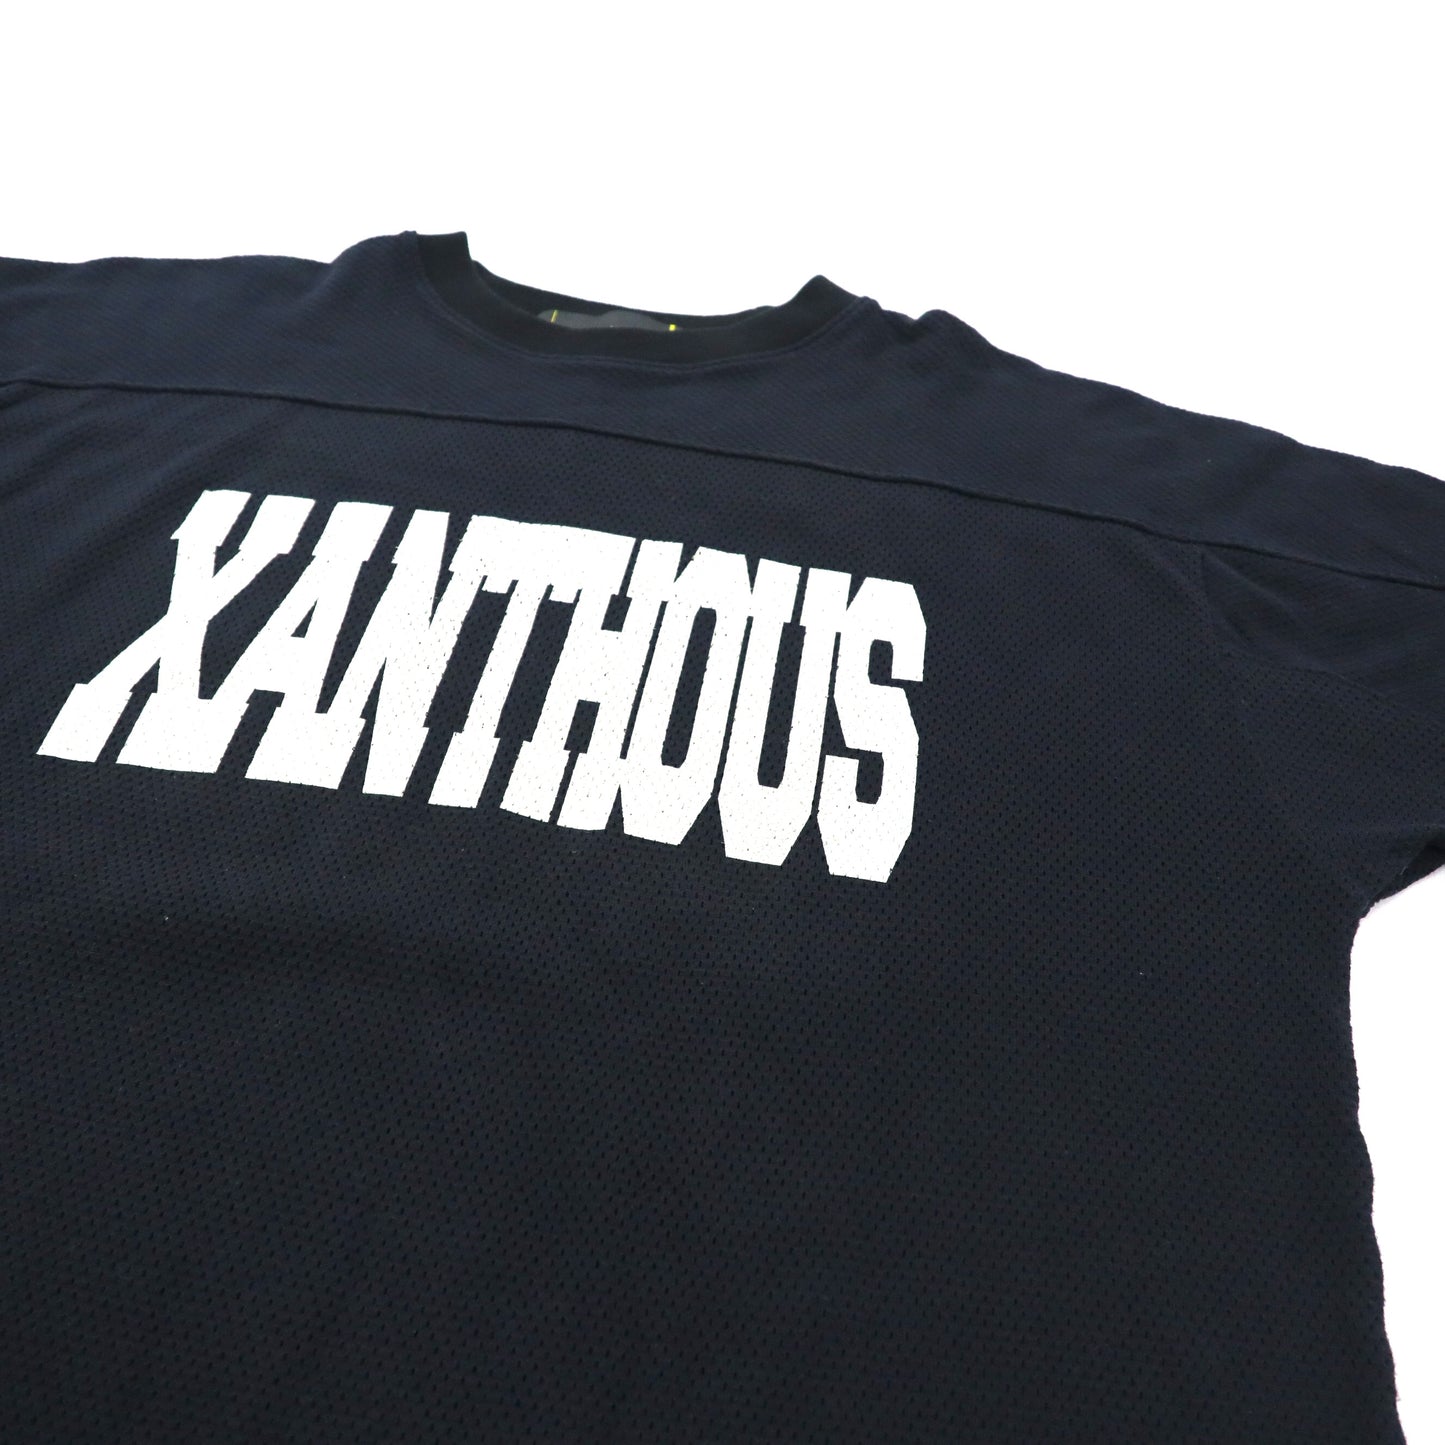 XANTHOUS T.C ゲームシャツ 2 ブラック ロゴプリント ナンバリング ビッグサイズ 00年代 日本製